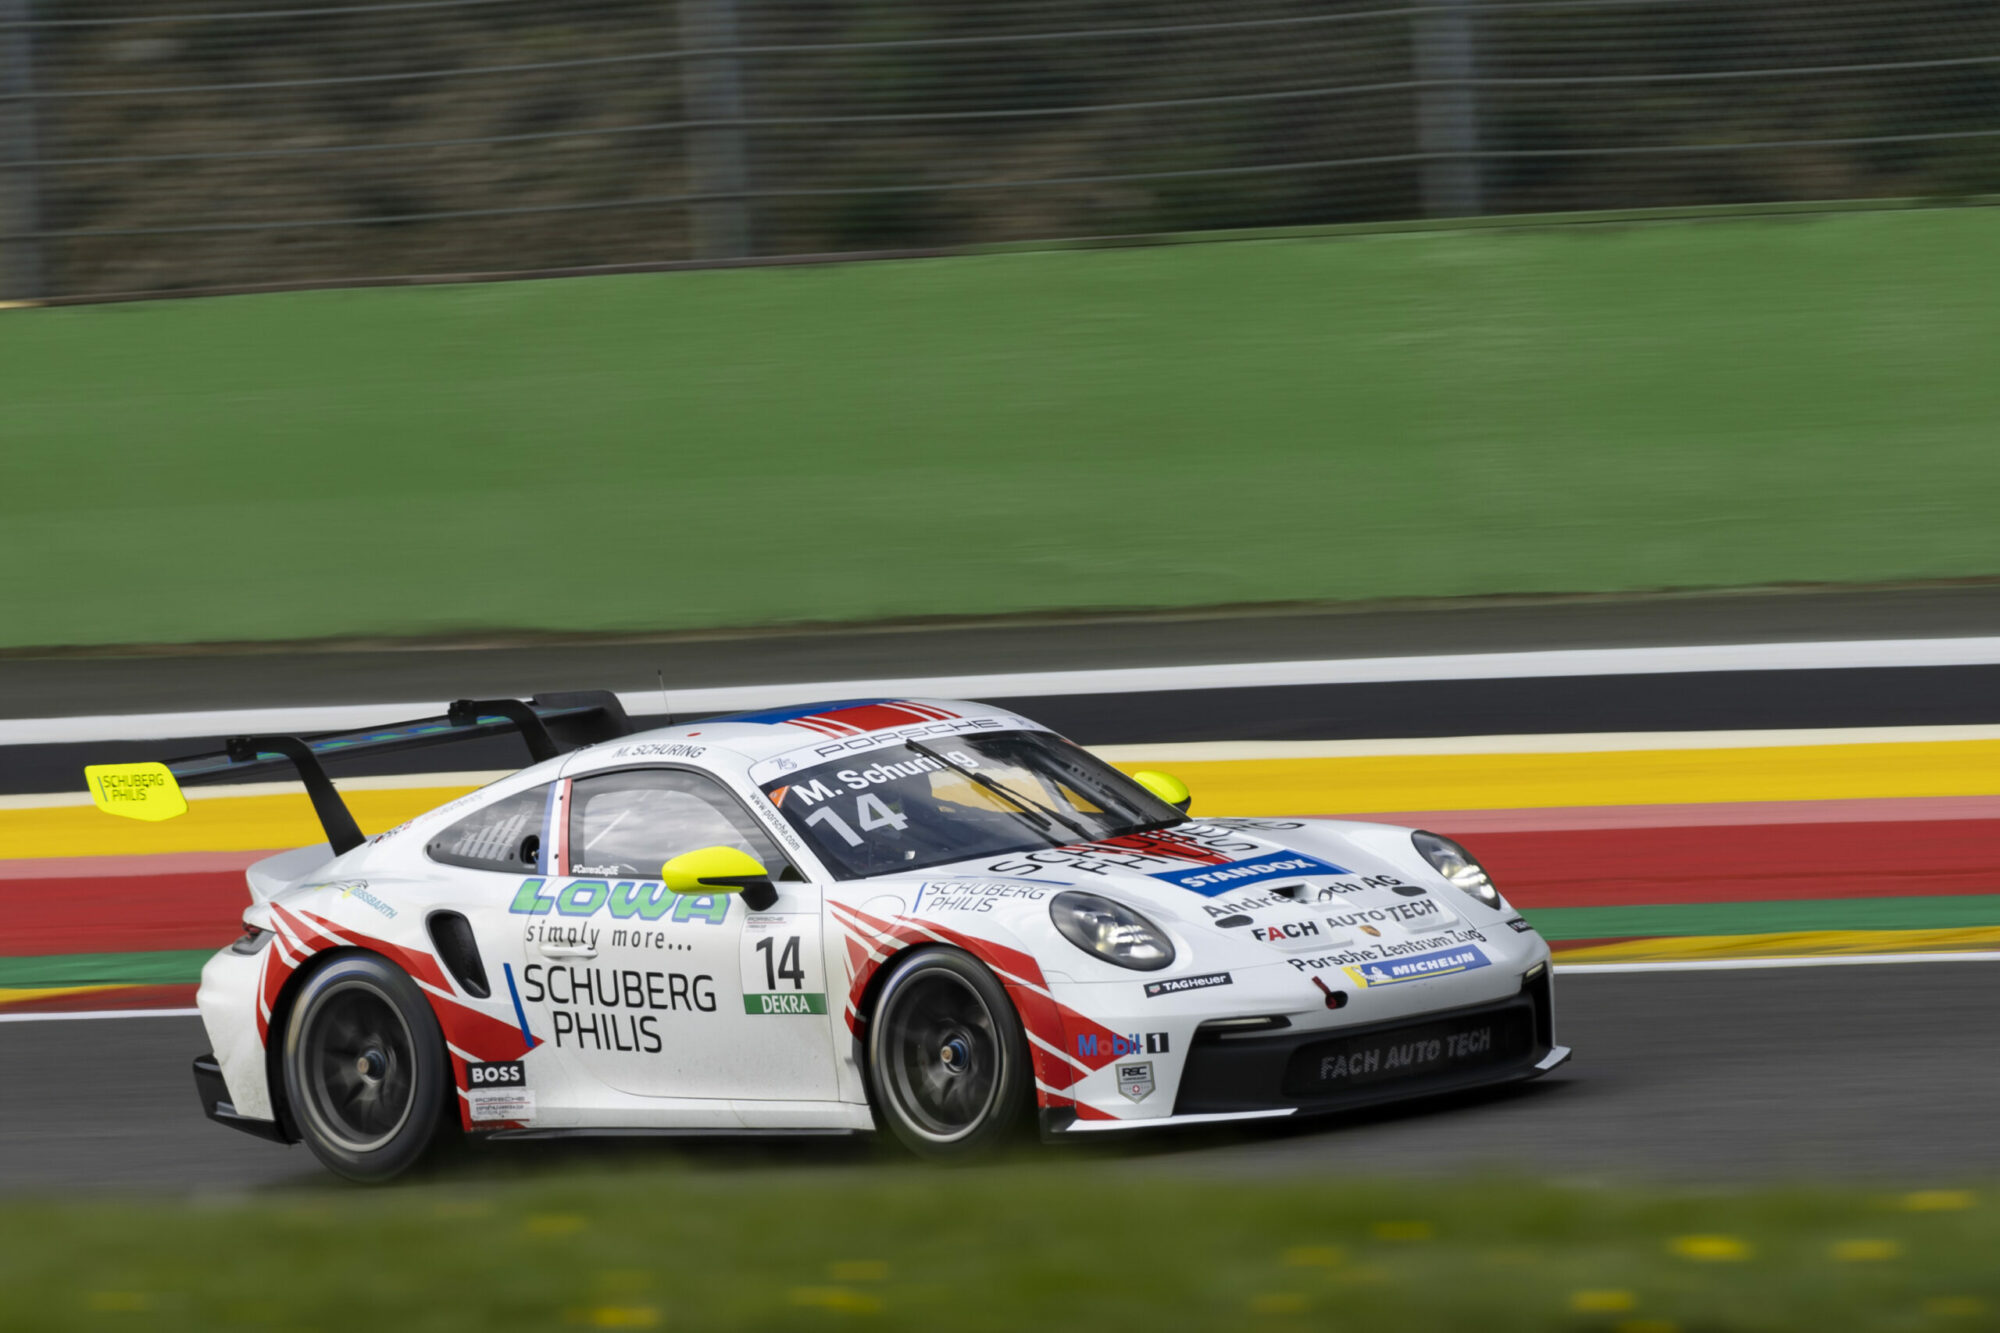 Morris Schuring Fach Auto Tech Porsche 911 GT3 Cup Porsche Carrera Cup Hockenheim